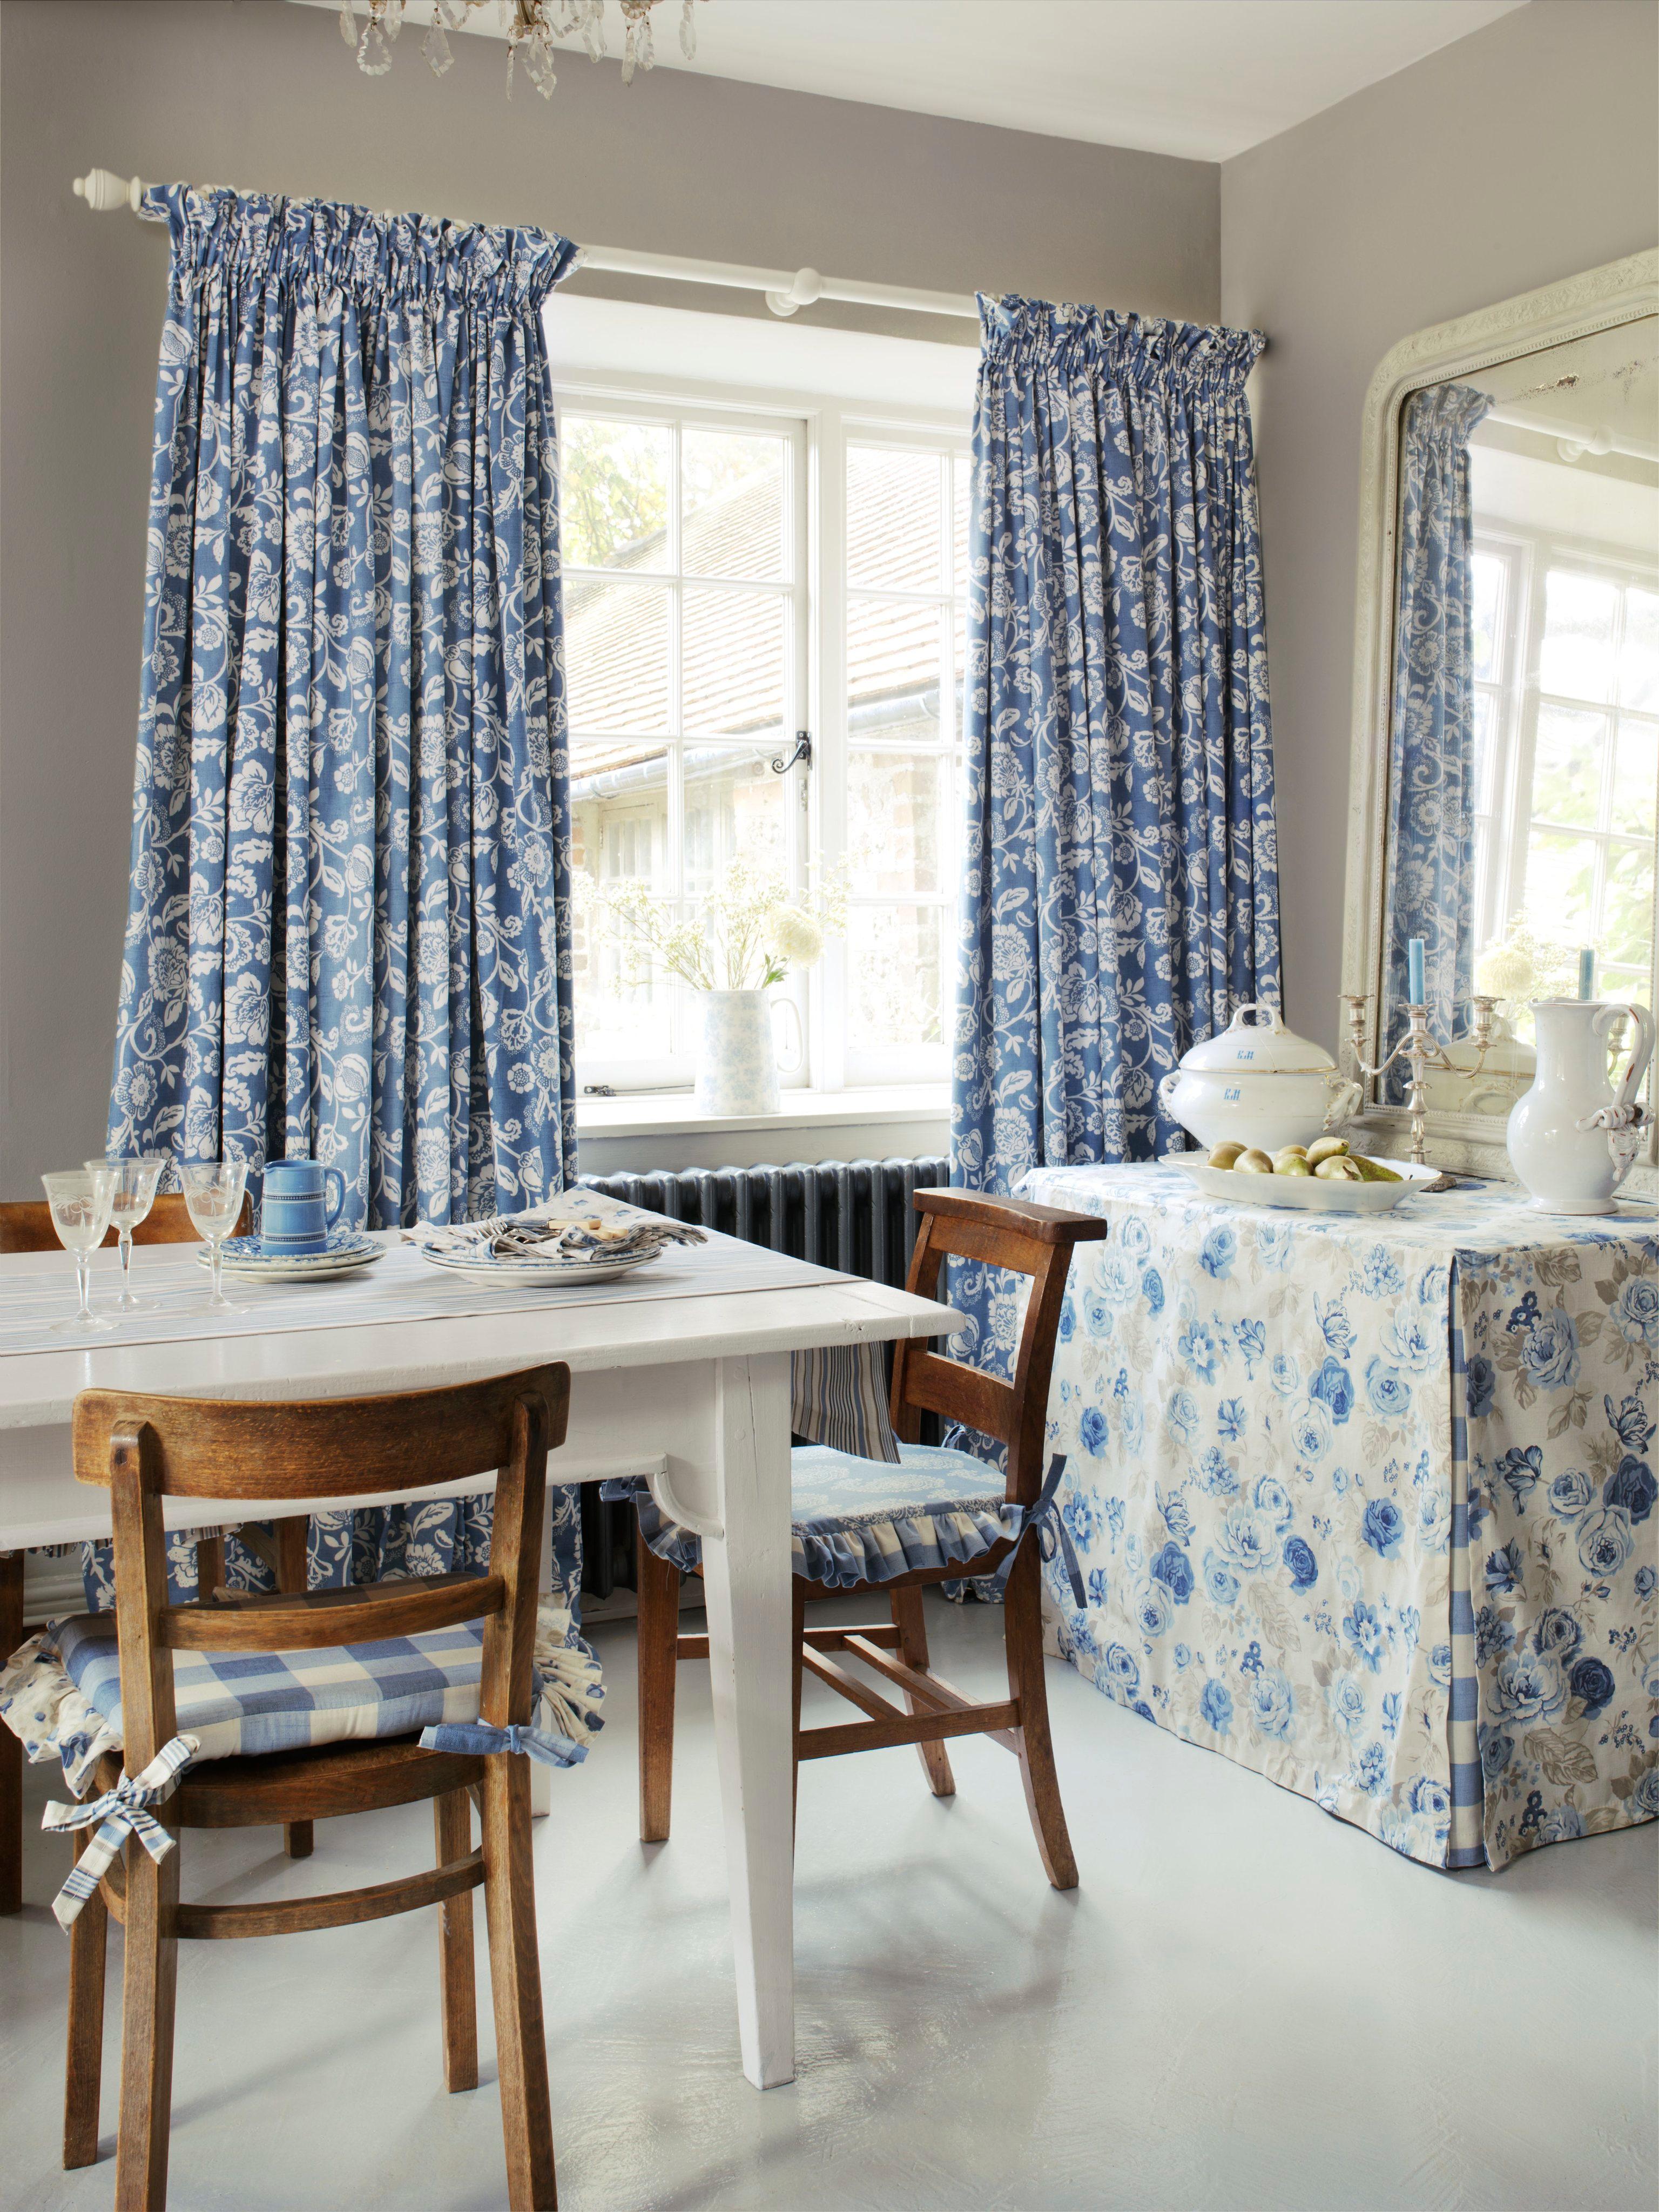 Gemütliches Esszimmer mit Accessoires in blauem Blumenmuster #küche ©Clarke & Clarke